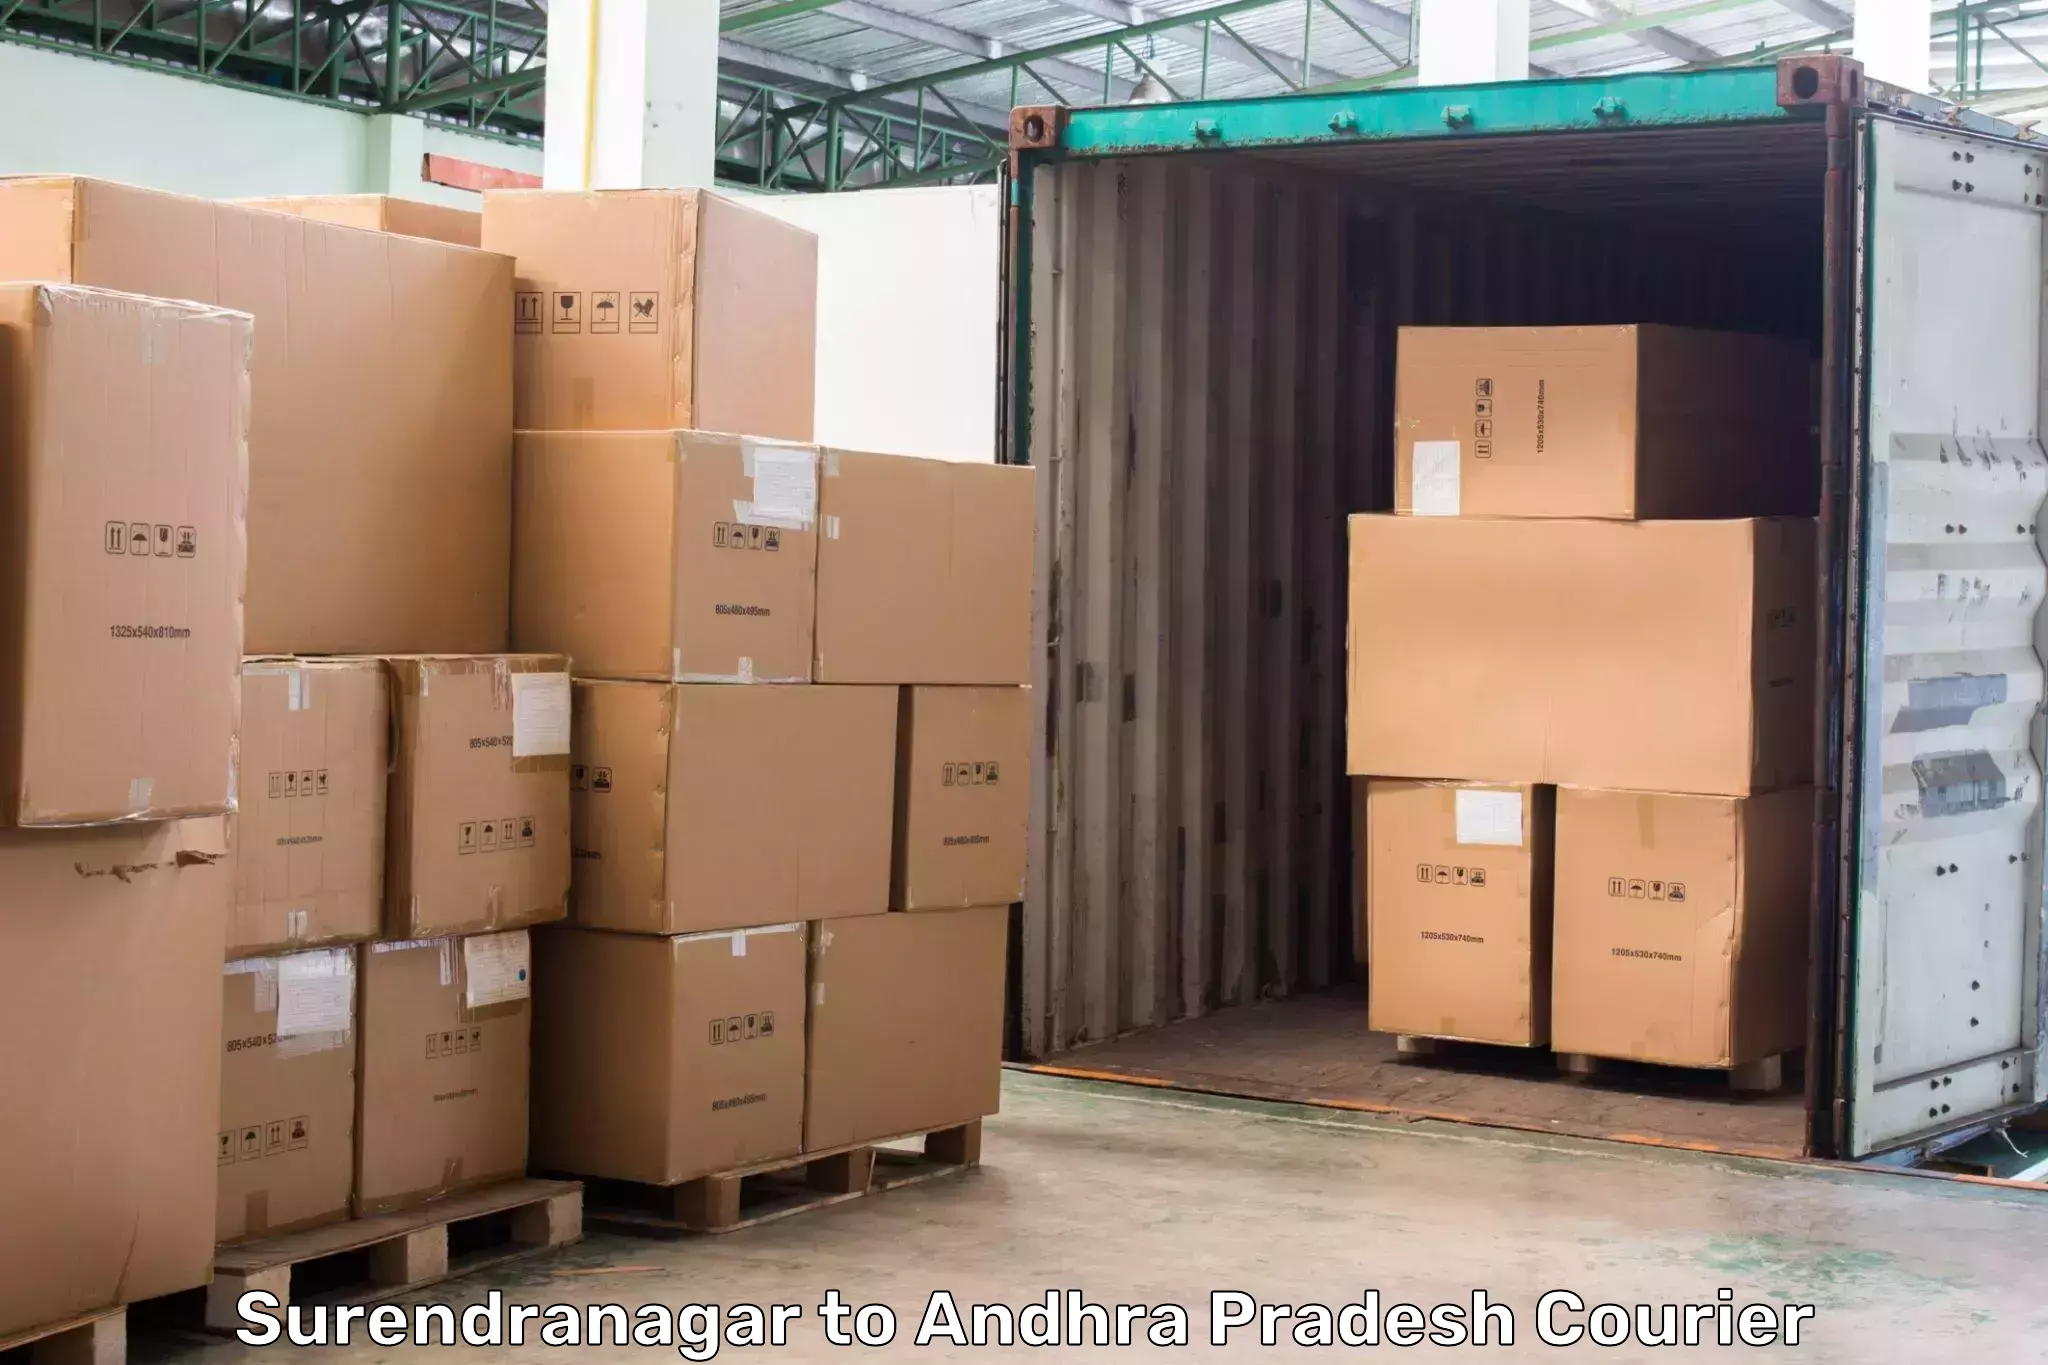 High-capacity parcel service Surendranagar to Andhra Pradesh